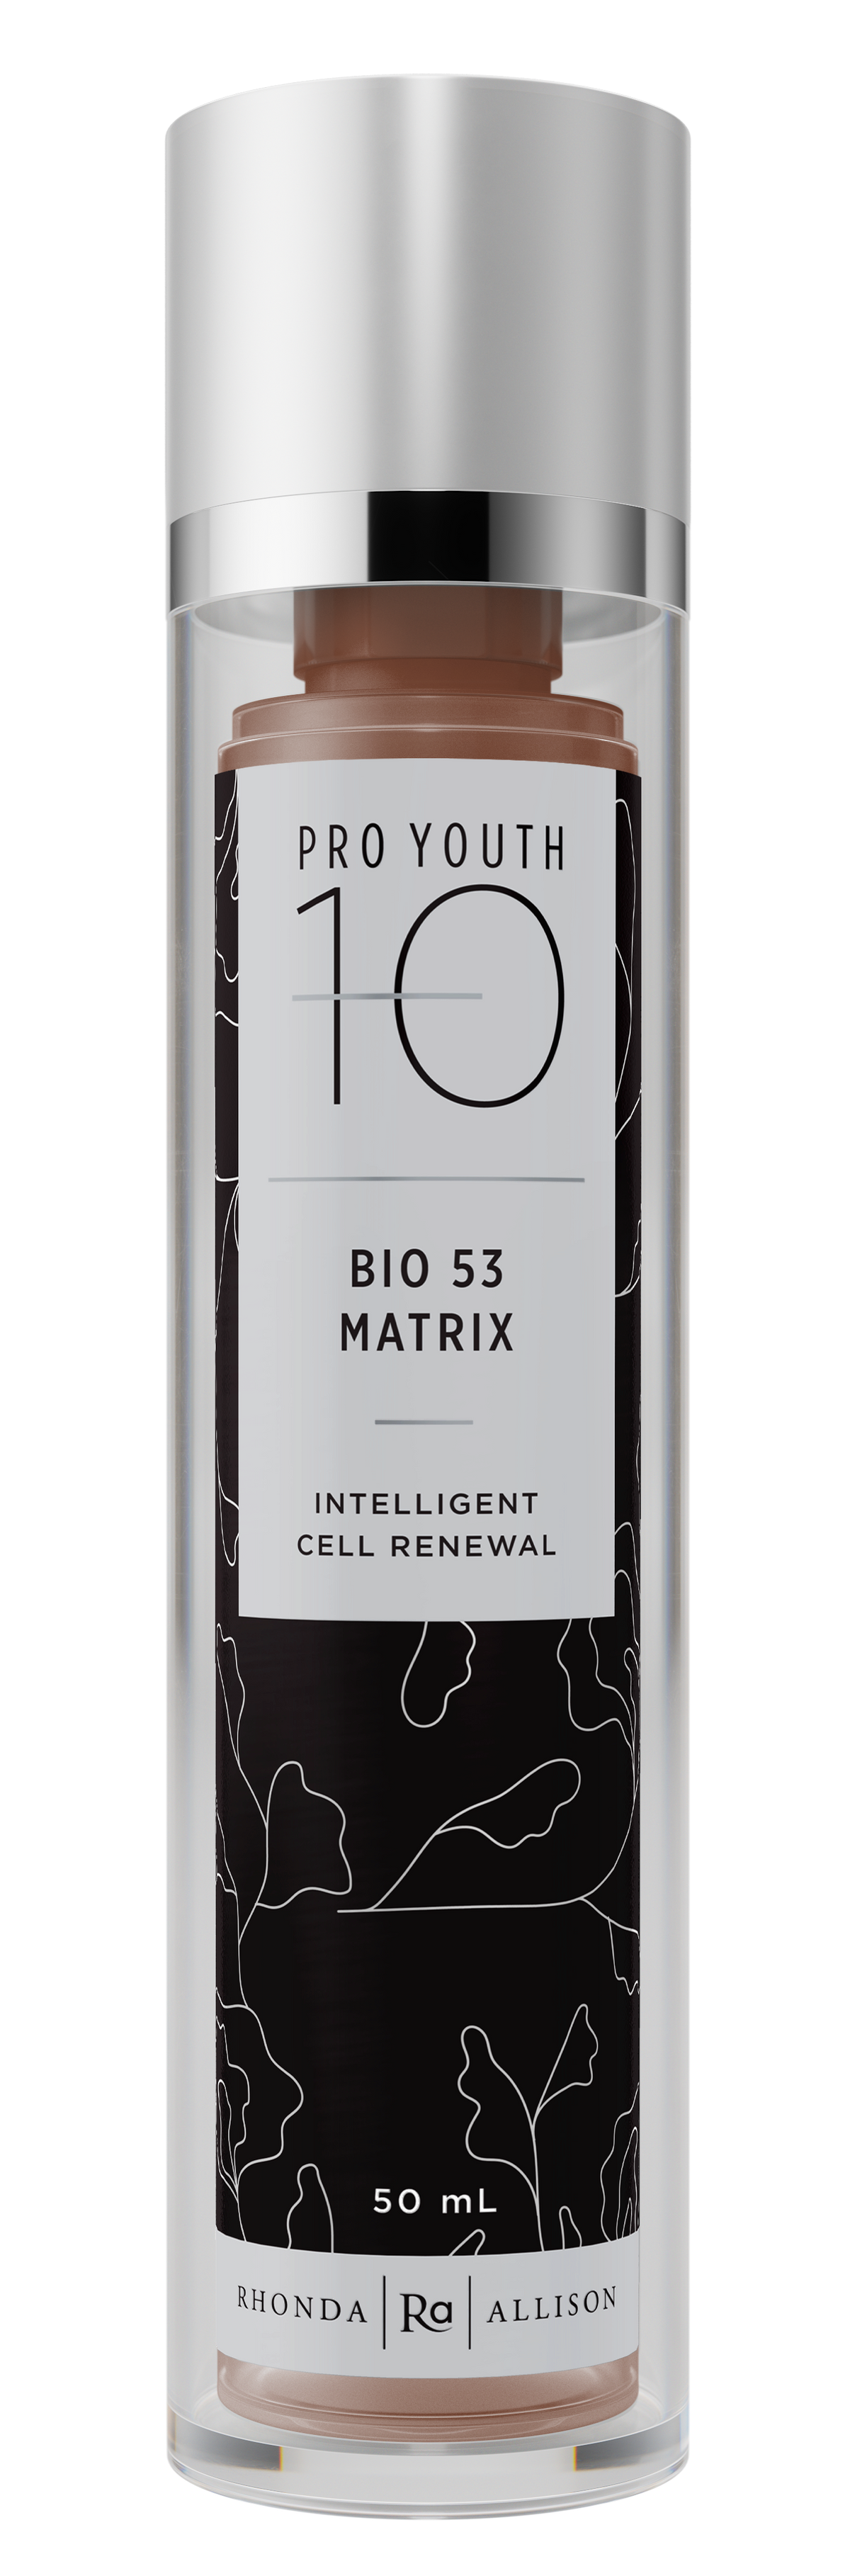 Bio 53 Matrix